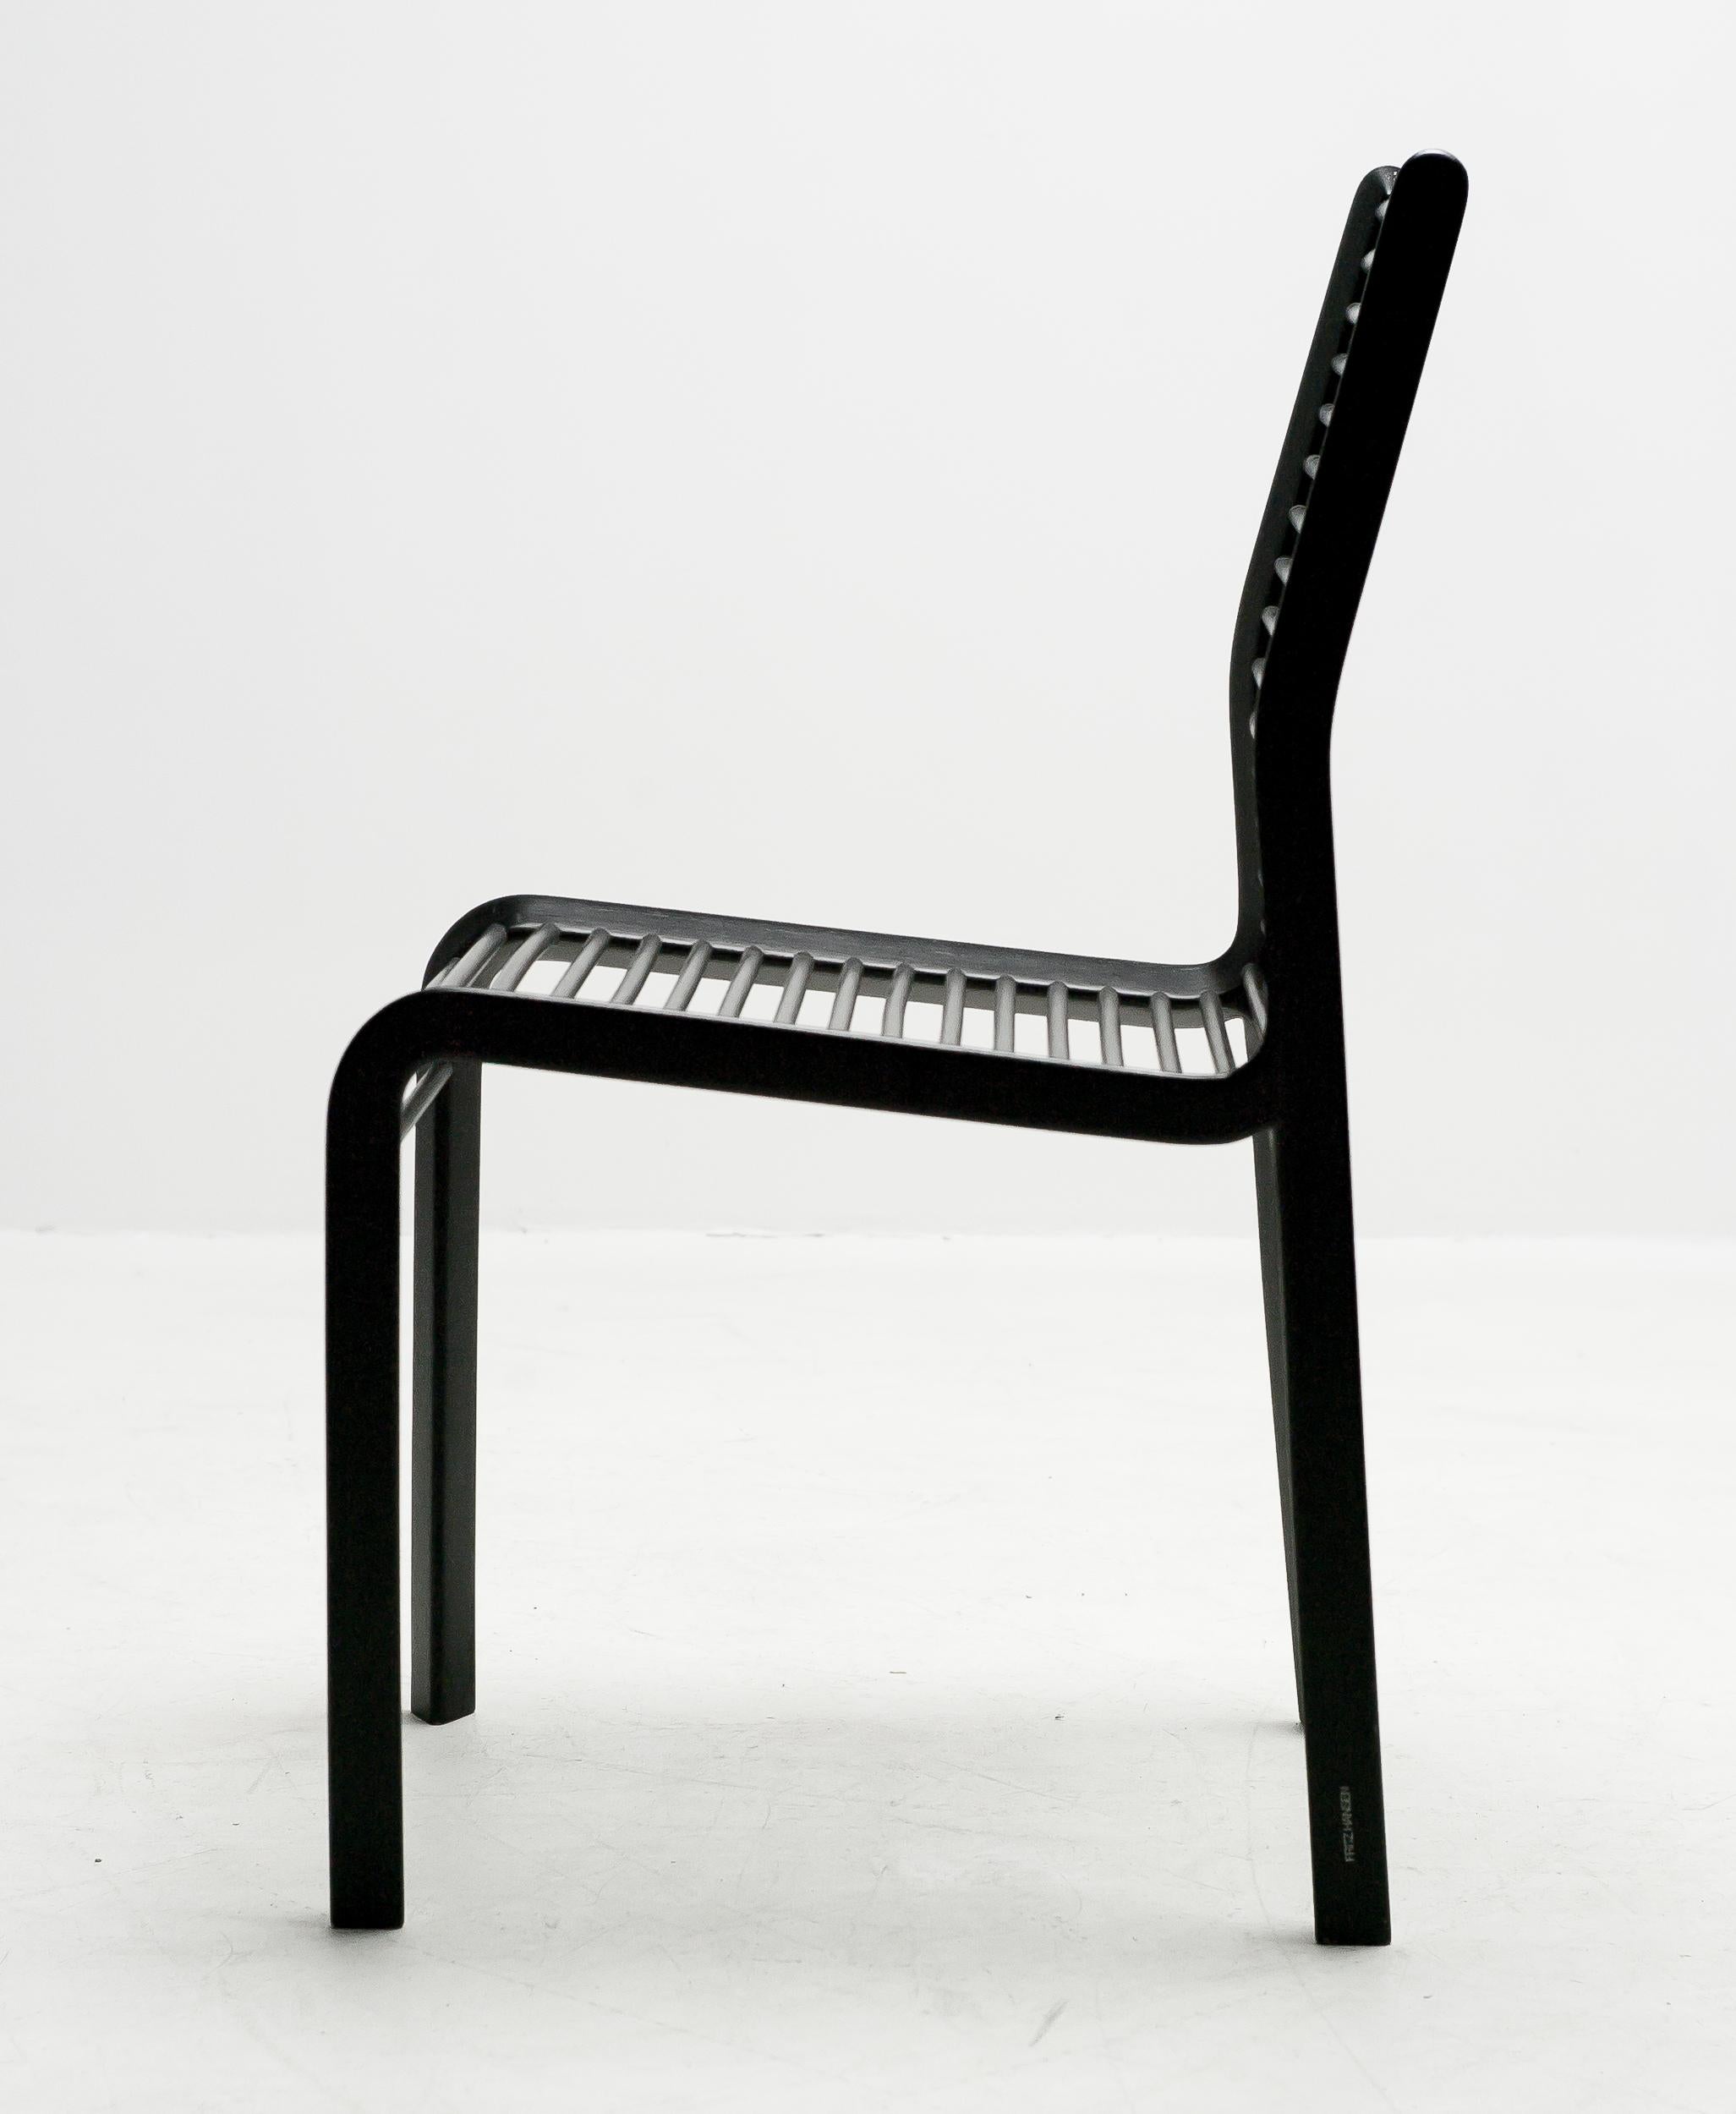 L'exceptionnelle chaise Delta a été conçue en 1983 et est le résultat de la première collaboration entre Burkhard Vogtherr et Fritz Hansen. Cette remarquable chaise en bois laqué noir est fabriquée en édition limitée, à seulement 100 exemplaires.